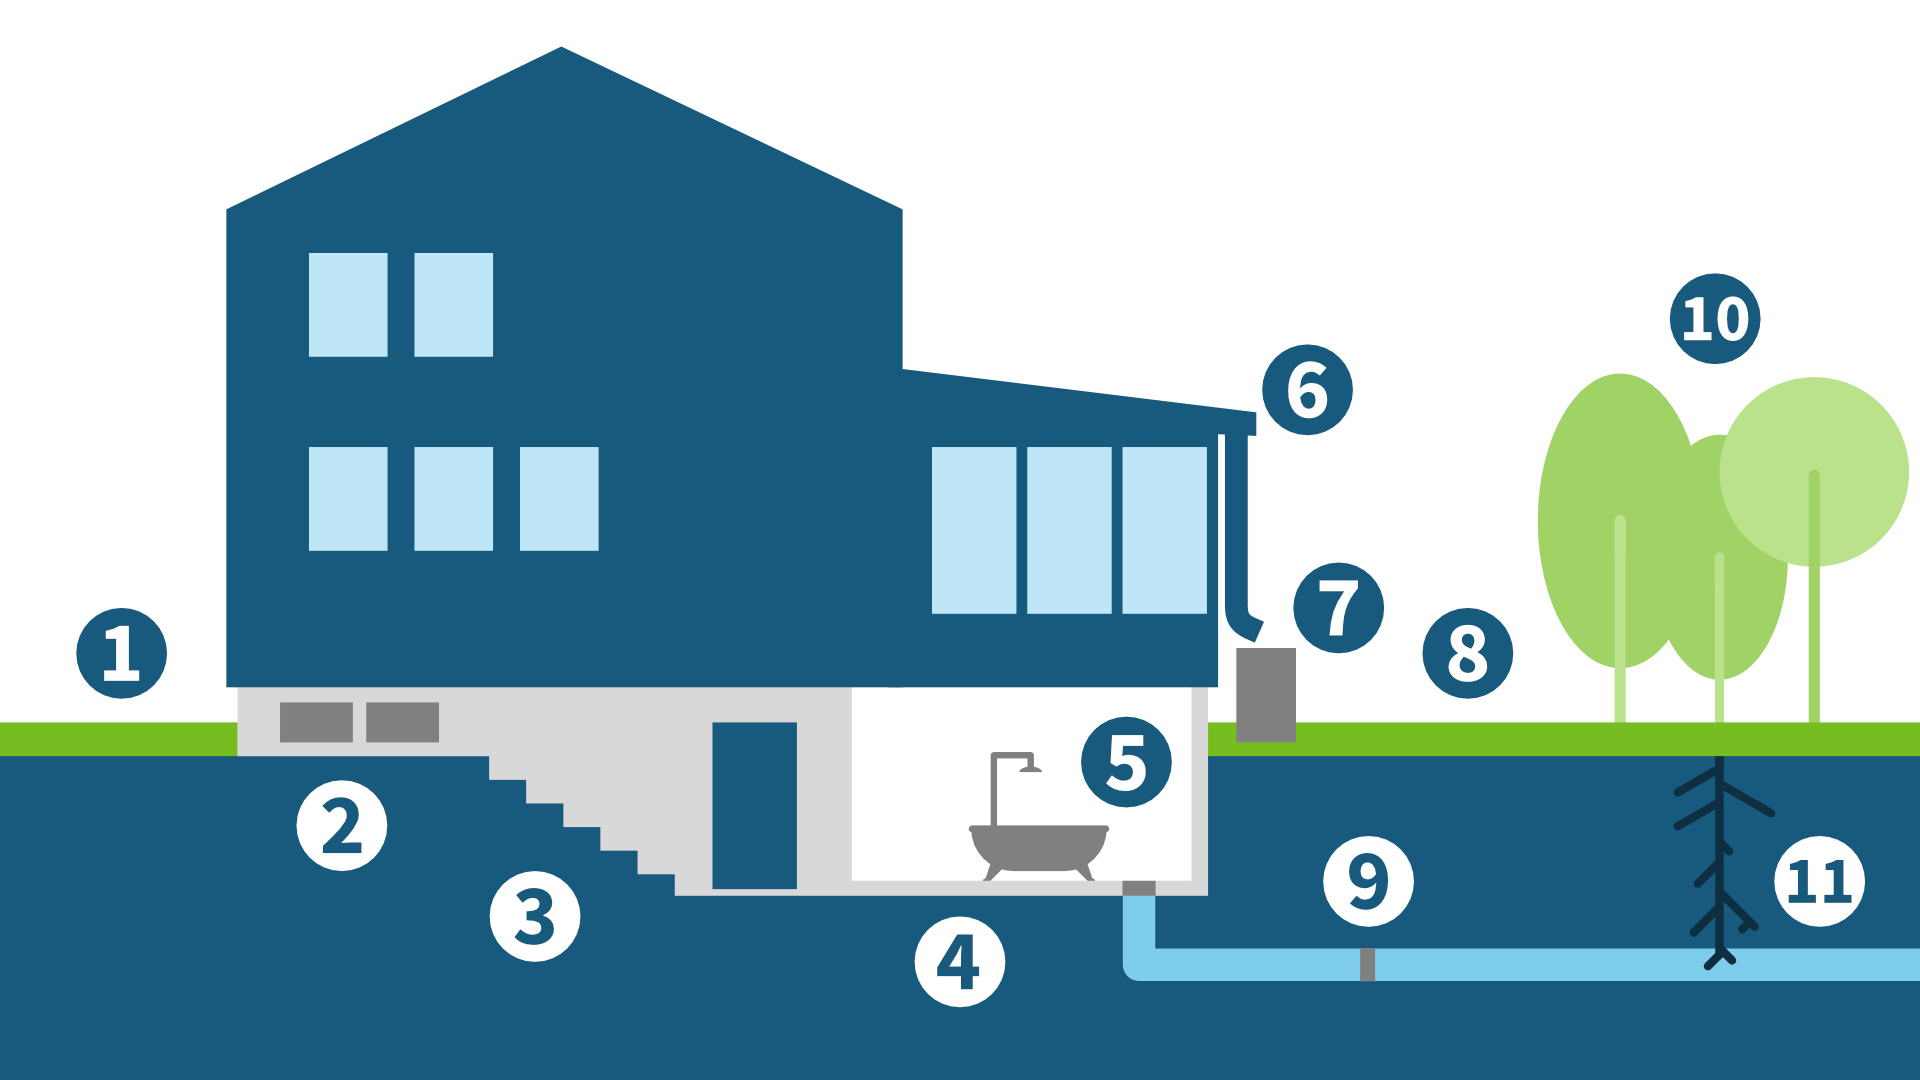 Lllustration av fastighet med olika områden där kontroller och åtgärder kan genomföras för att förebygga källaröversvämning.